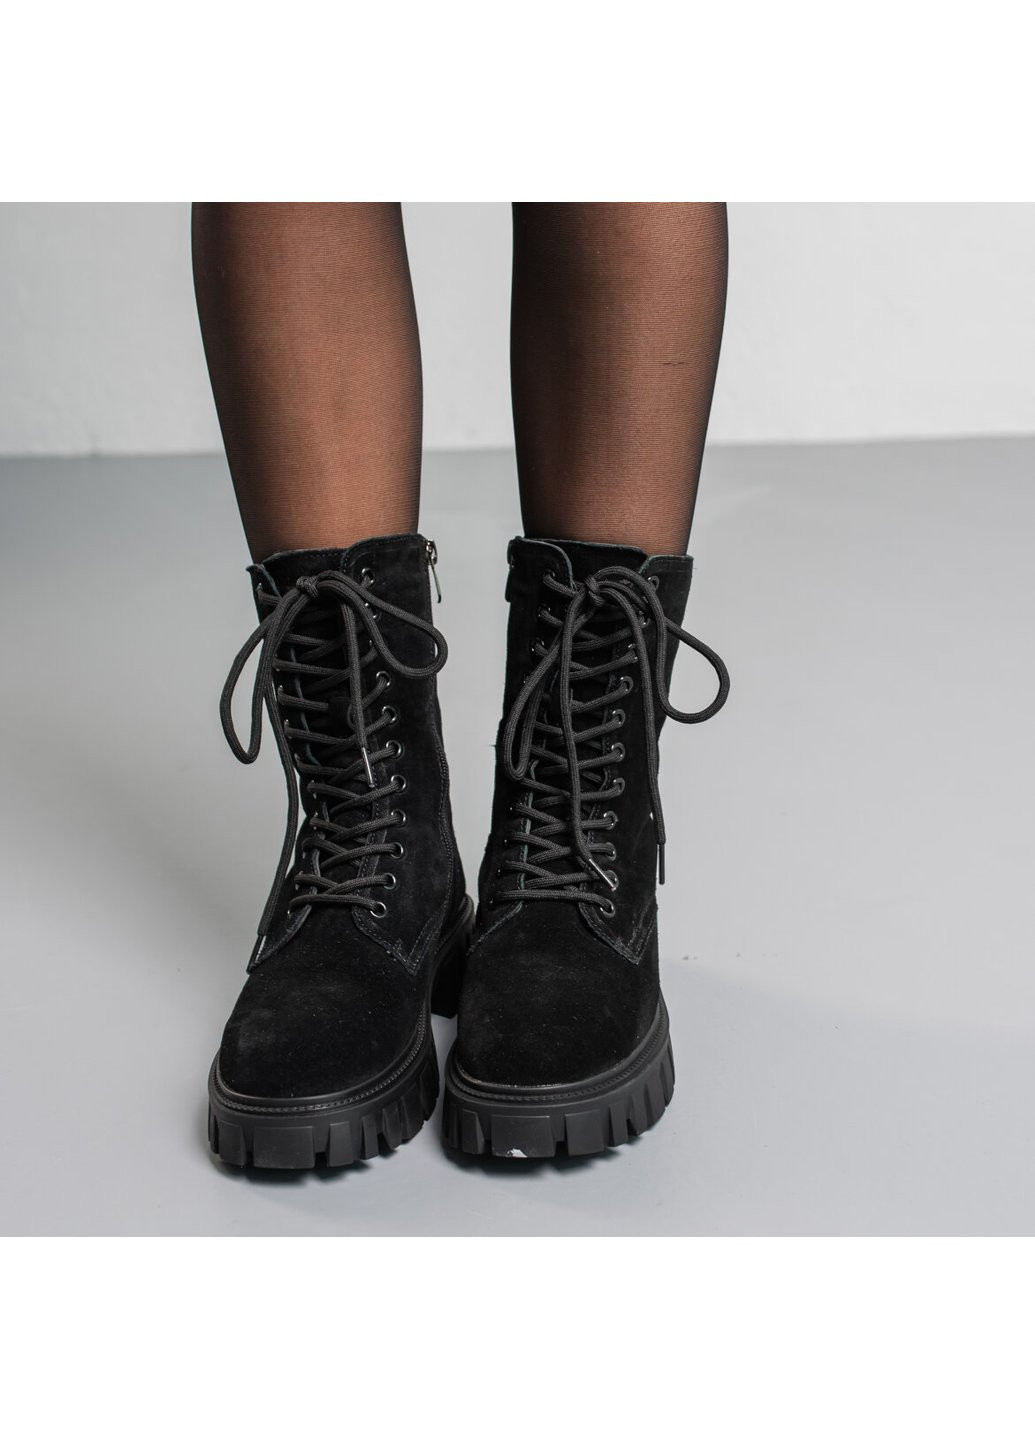 Зимние ботинки женские зимние candy 3813 235 черный Fashion из натуральной замши